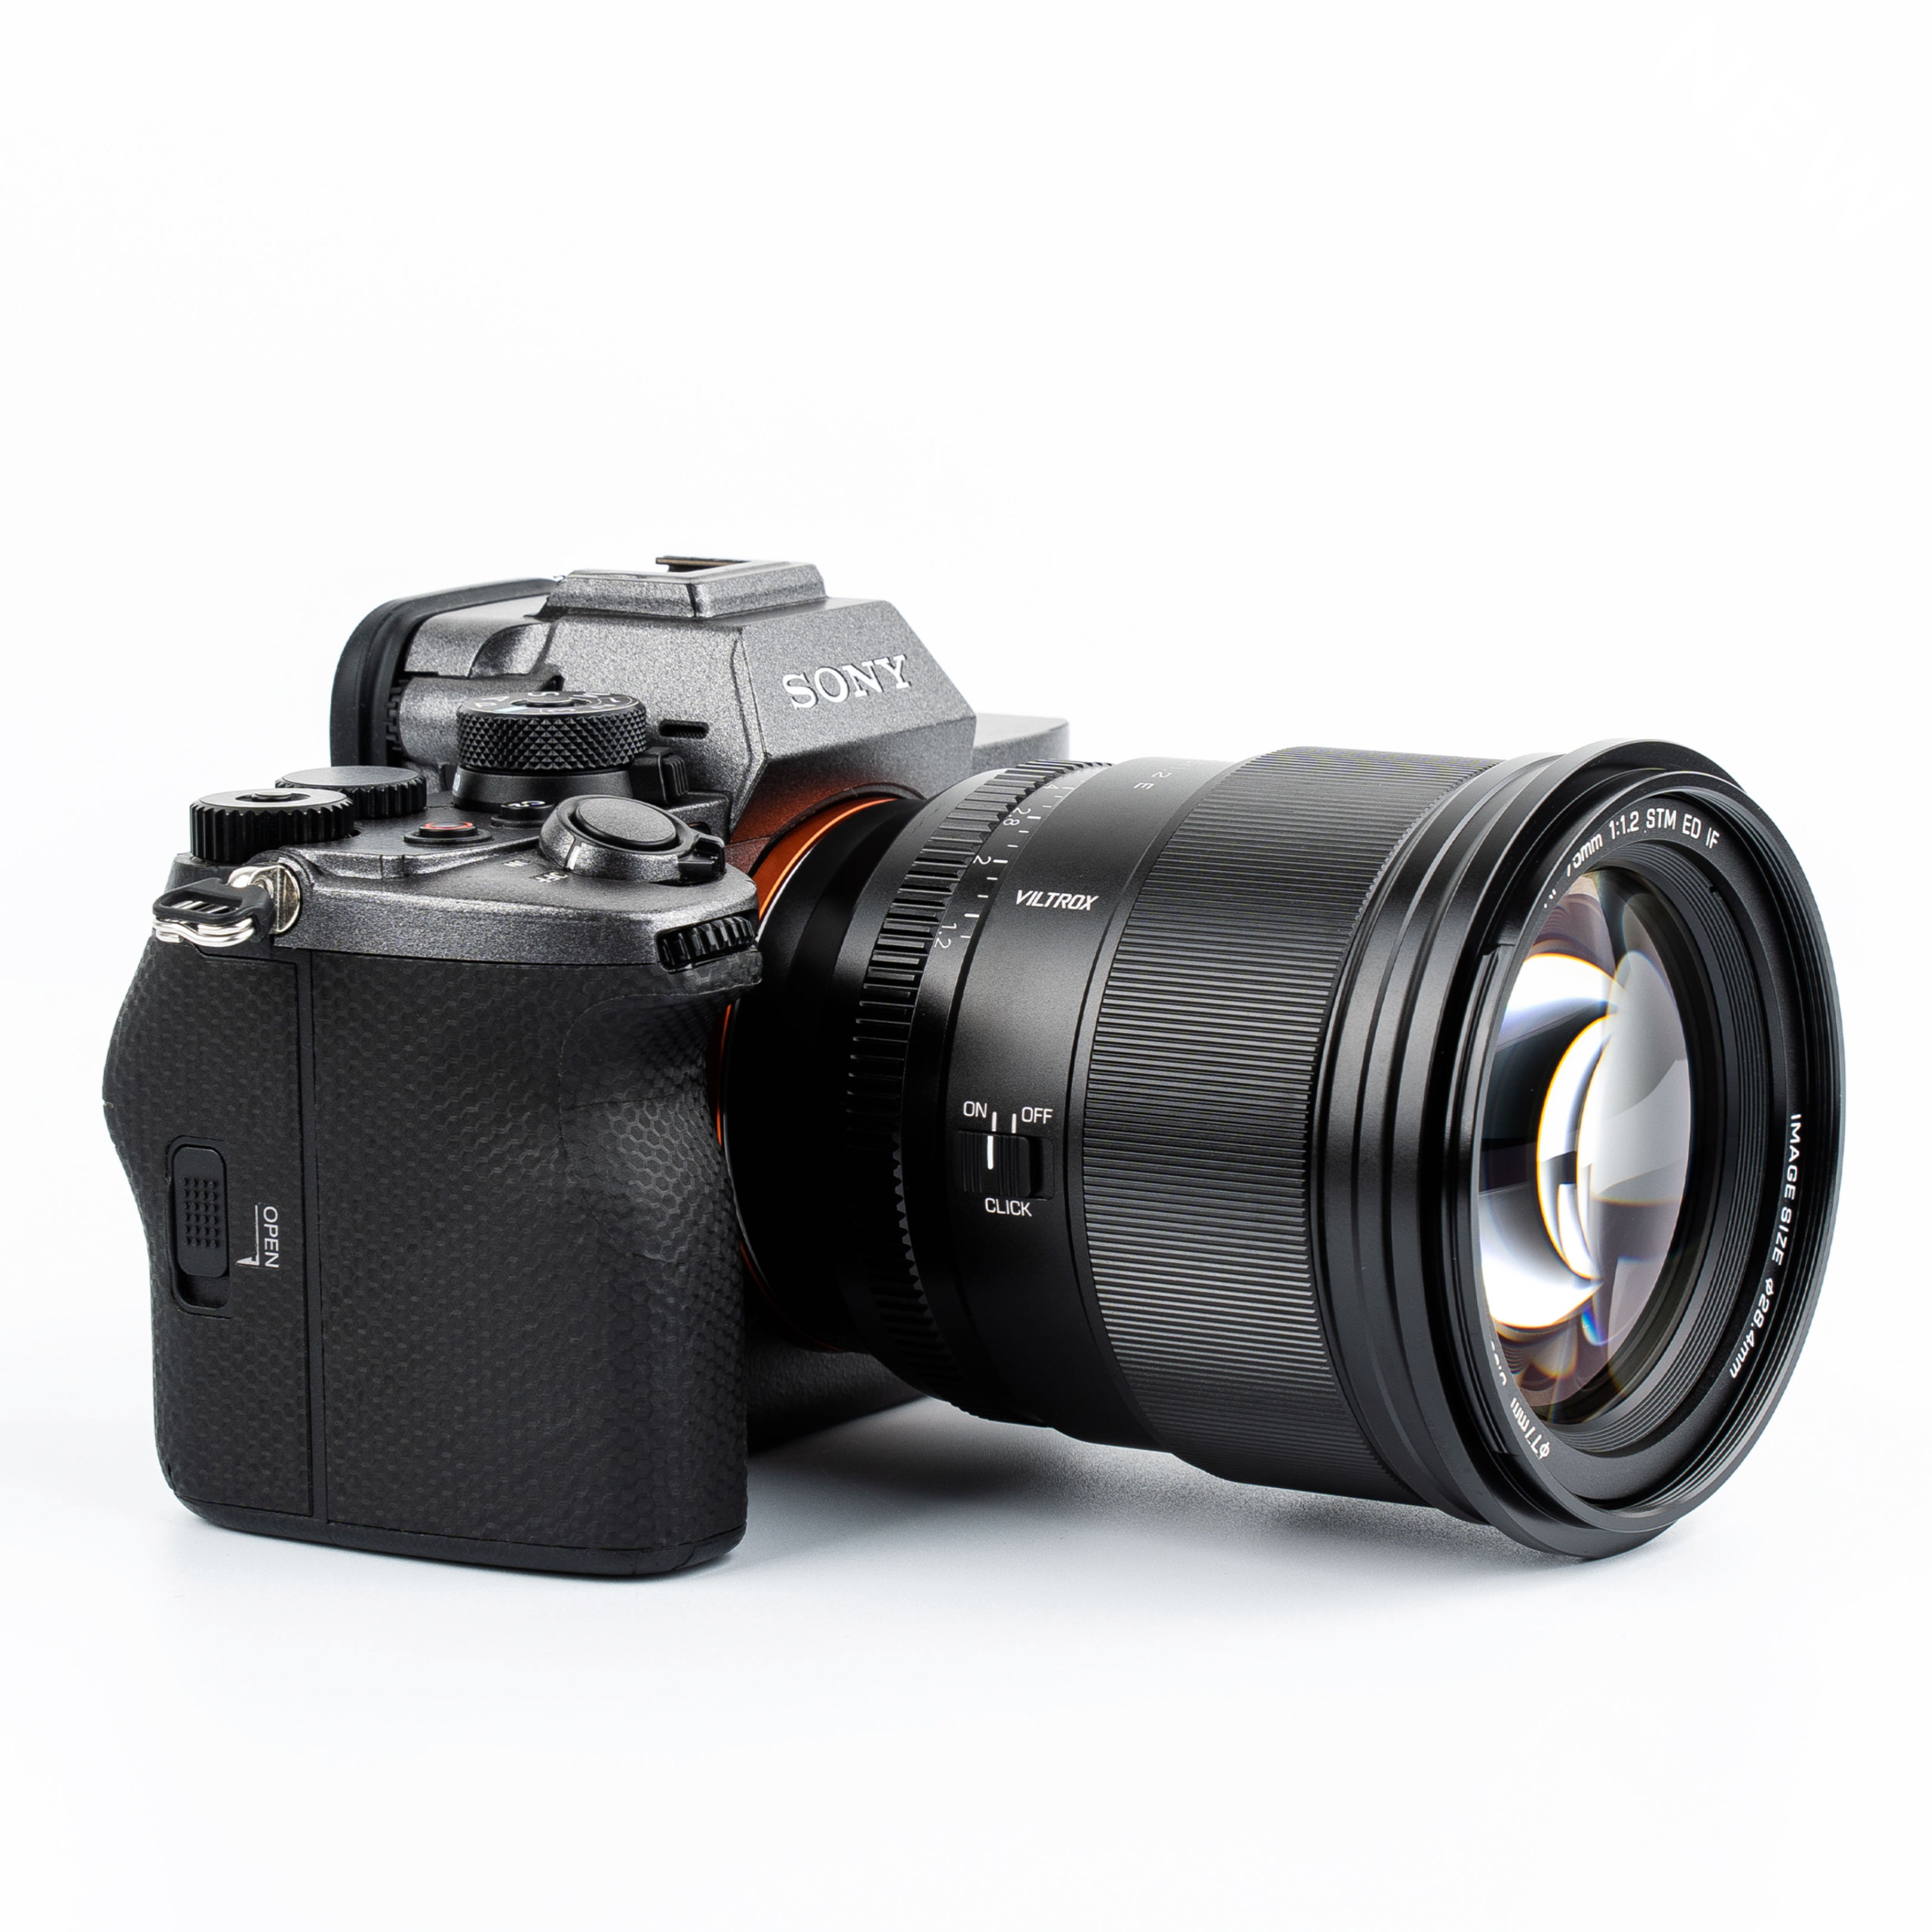 VILTROX PRO Series 75mm F1.2 E/Z Auto Focus Large Aperture APS-C Prime Lens Designed for Sony E-mount Nikon Z-mount Cameras